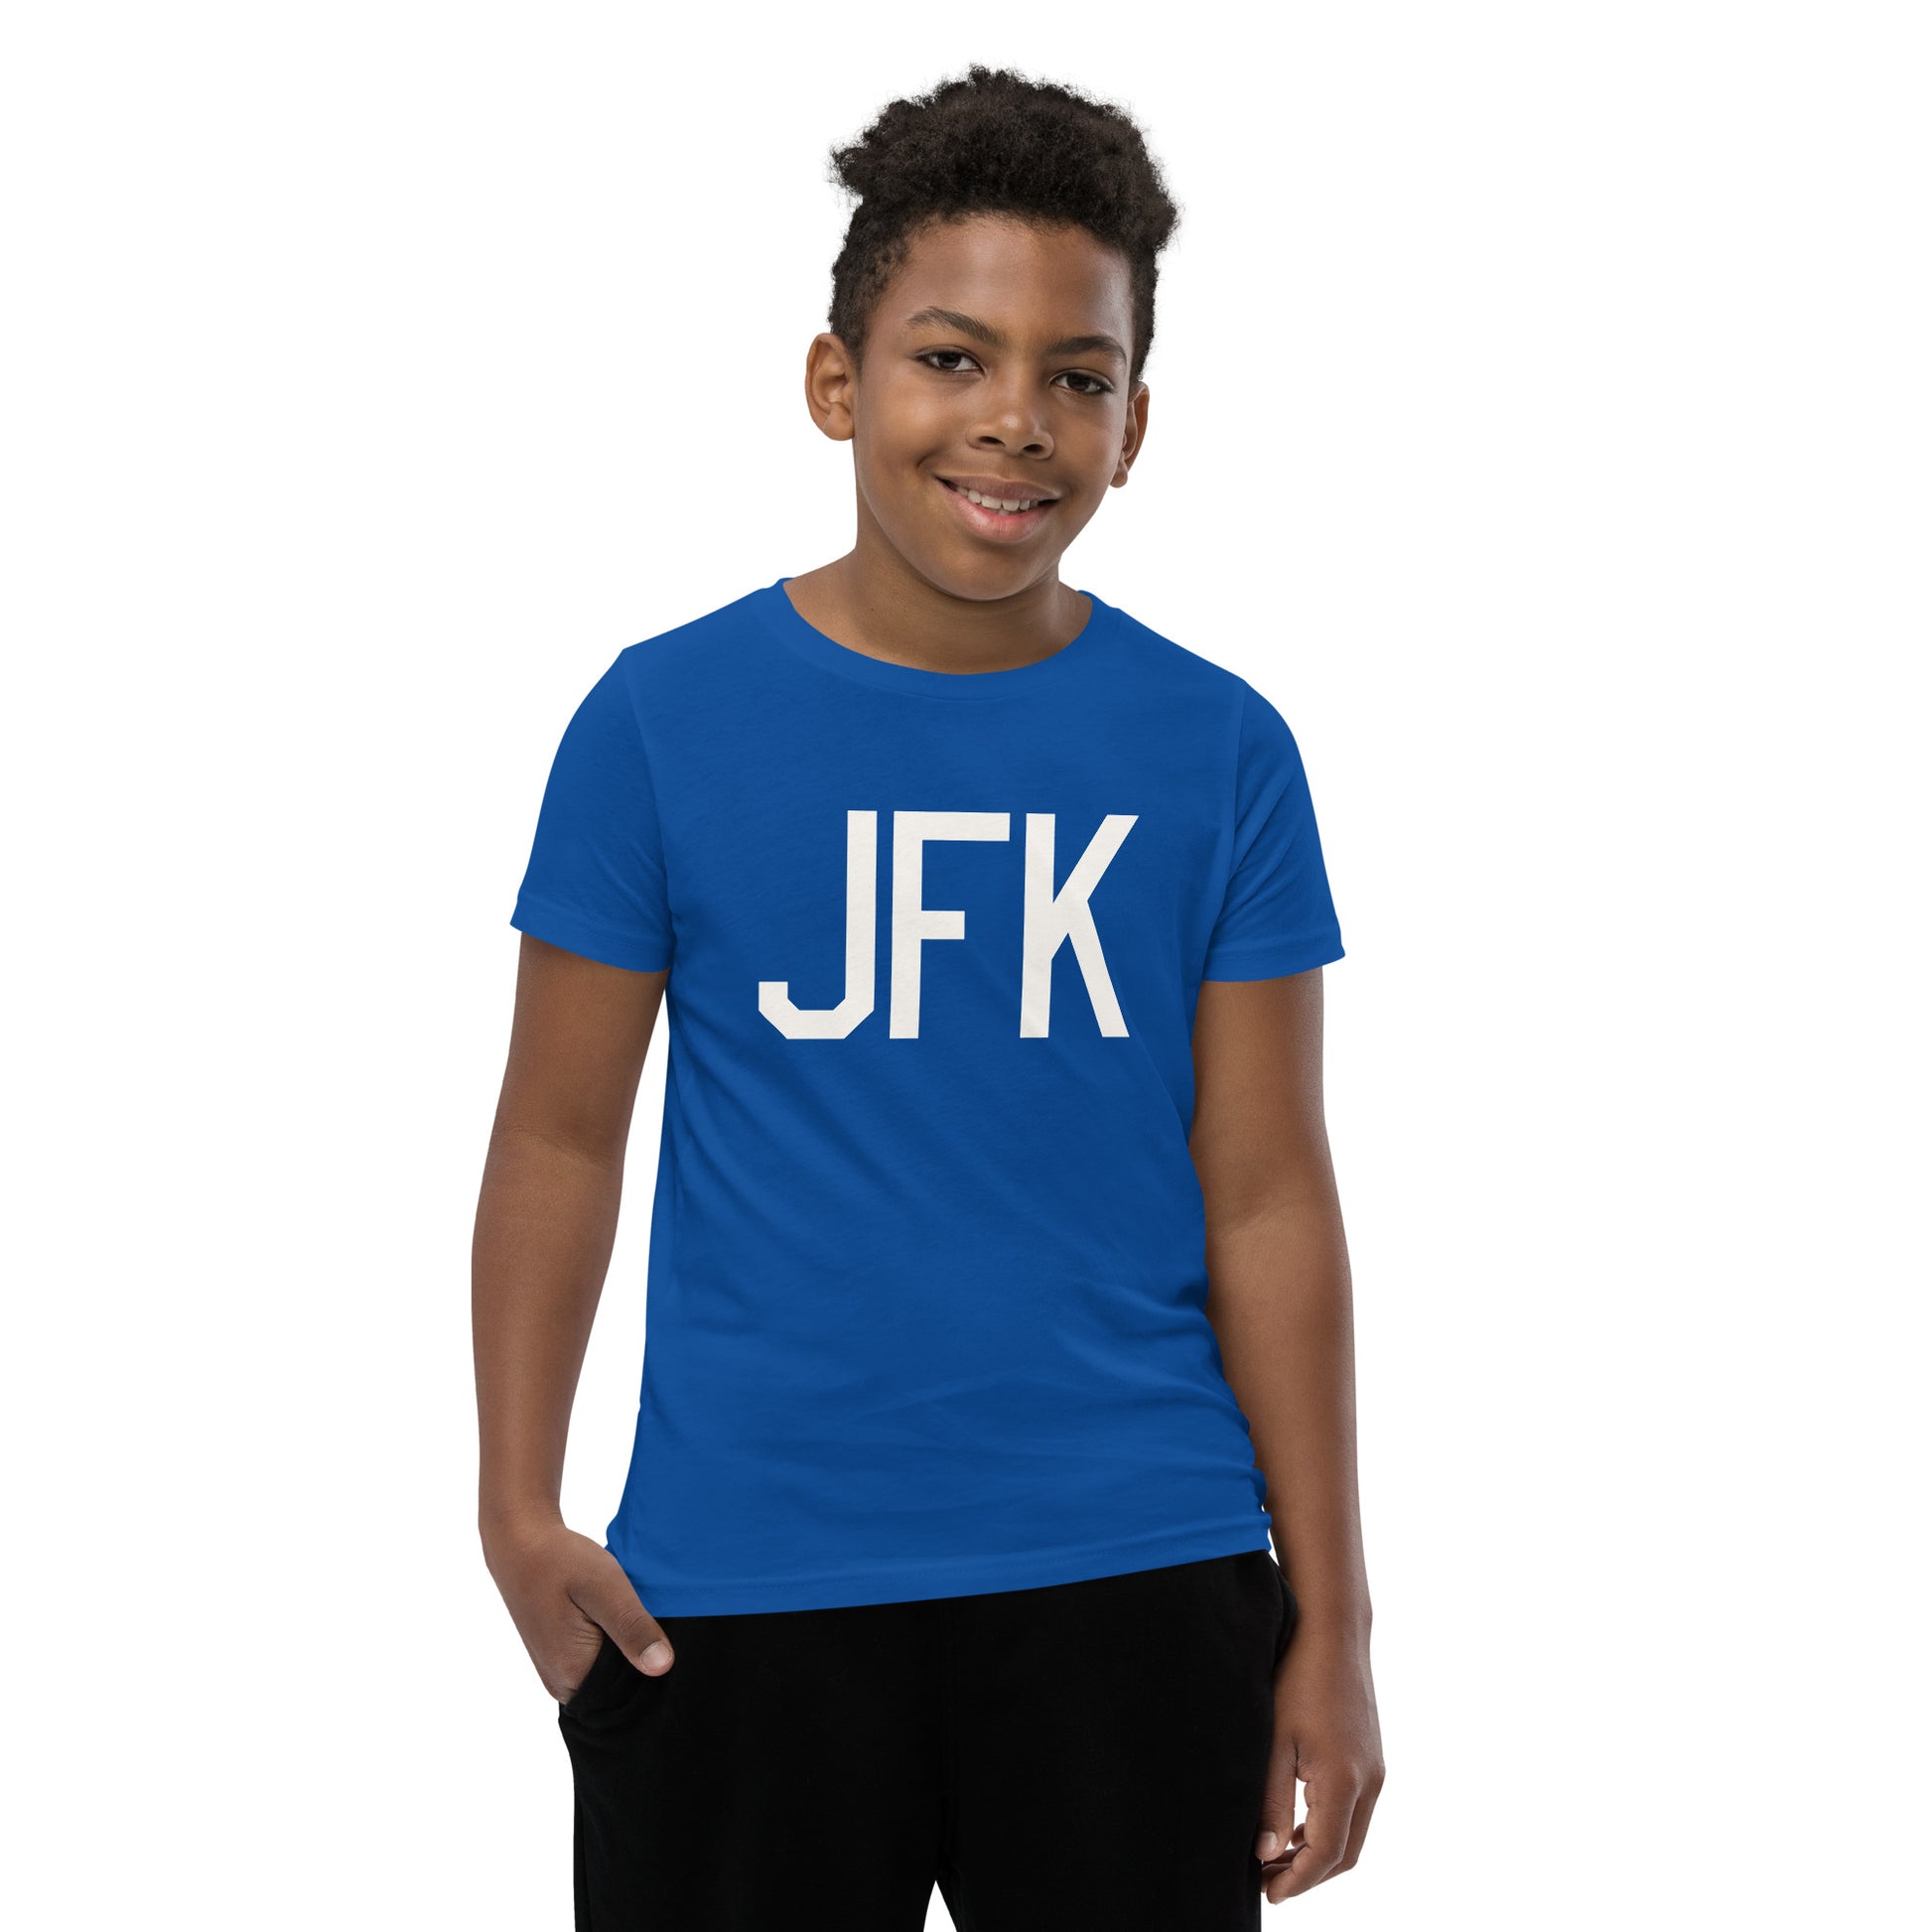 Kid's T-Shirt - White Graphic • JFK New York • YHM Designs - Image 11